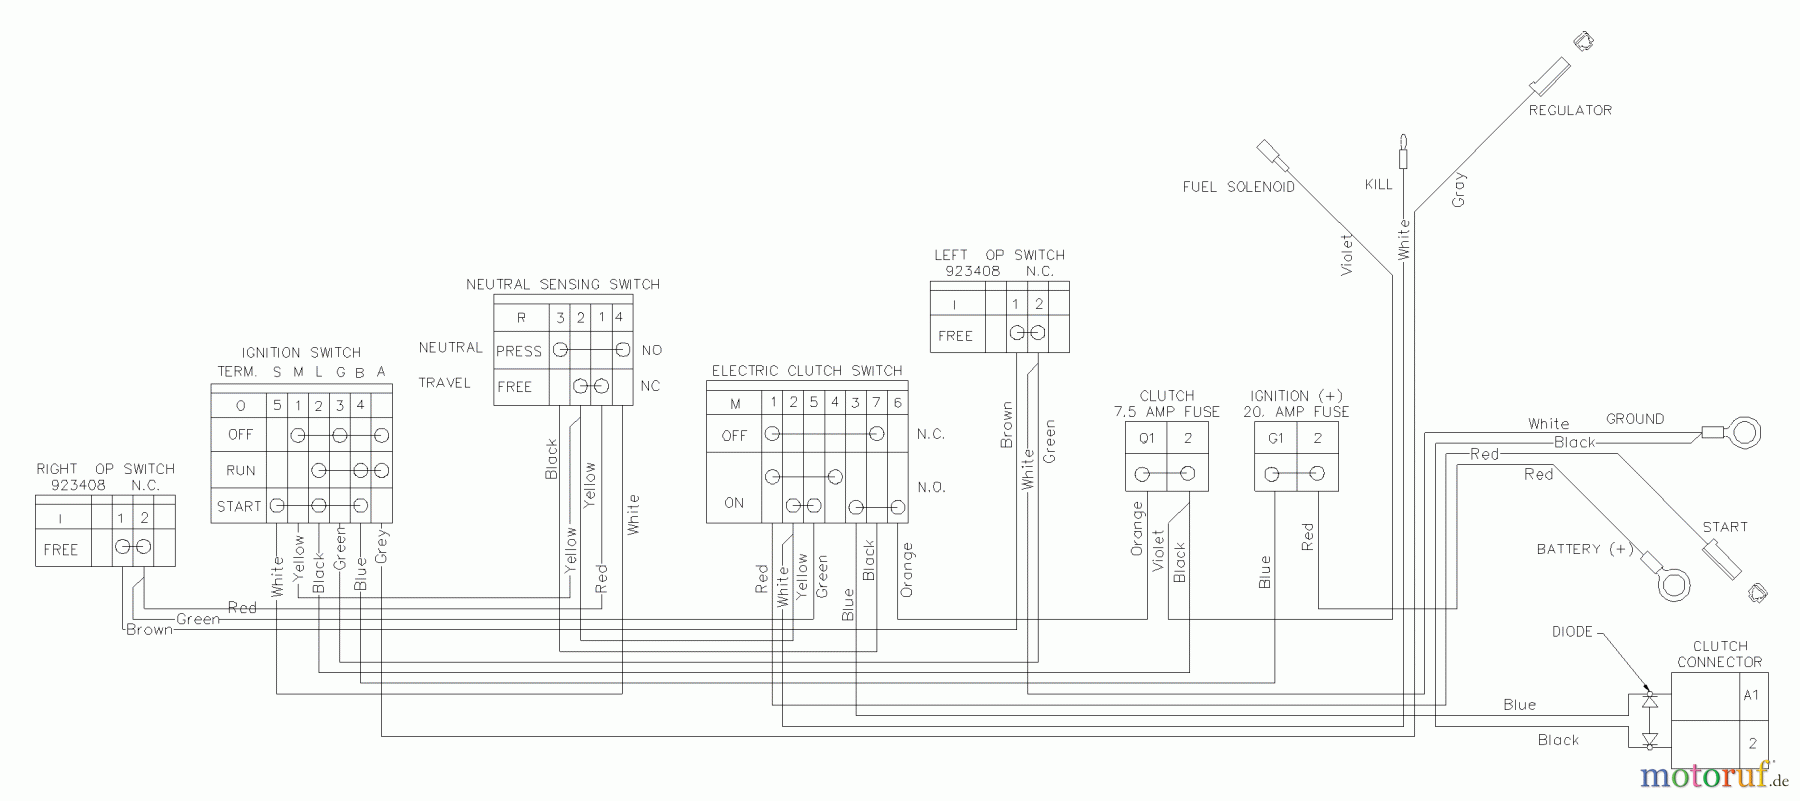  Husqvarna Rasenmäher für Großflächen WHF 4818ETS (968999129) - Husqvarna Wide-Area Walk-Behind Mower (2002-09 & After) Wiring Schematic